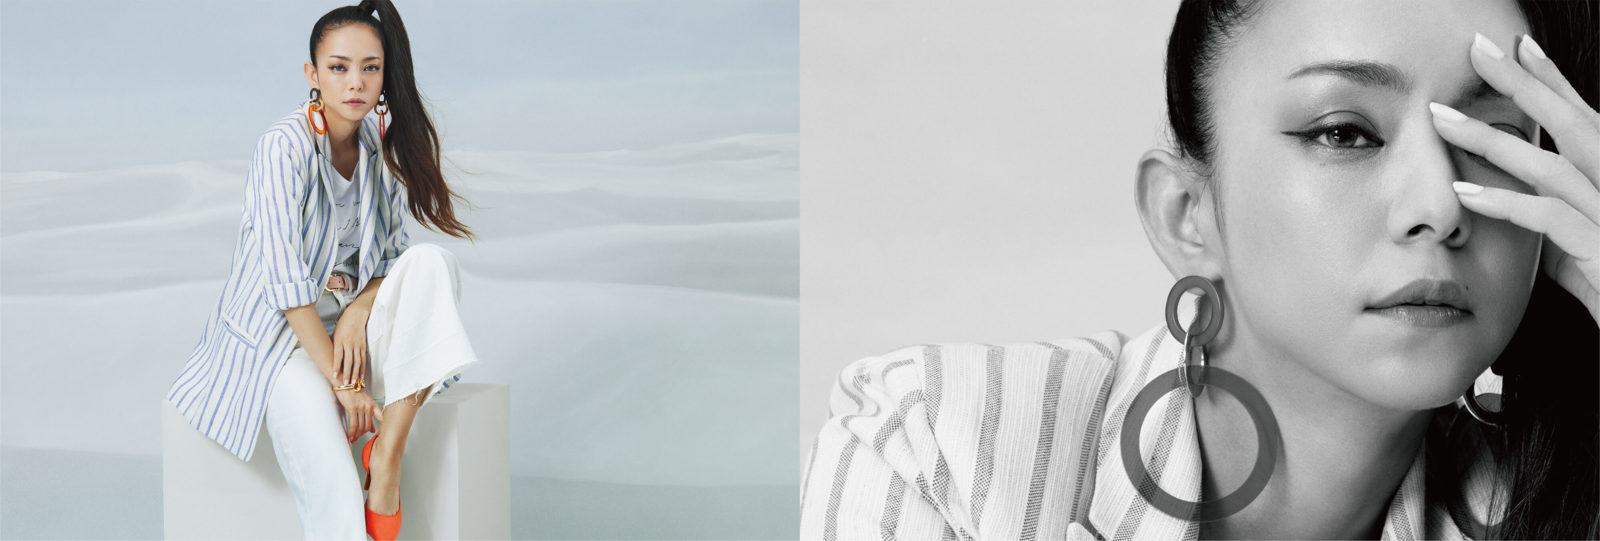 安室奈美恵xH&M アイテム着用ビジュアルと撮り下ろしポートレートが公開